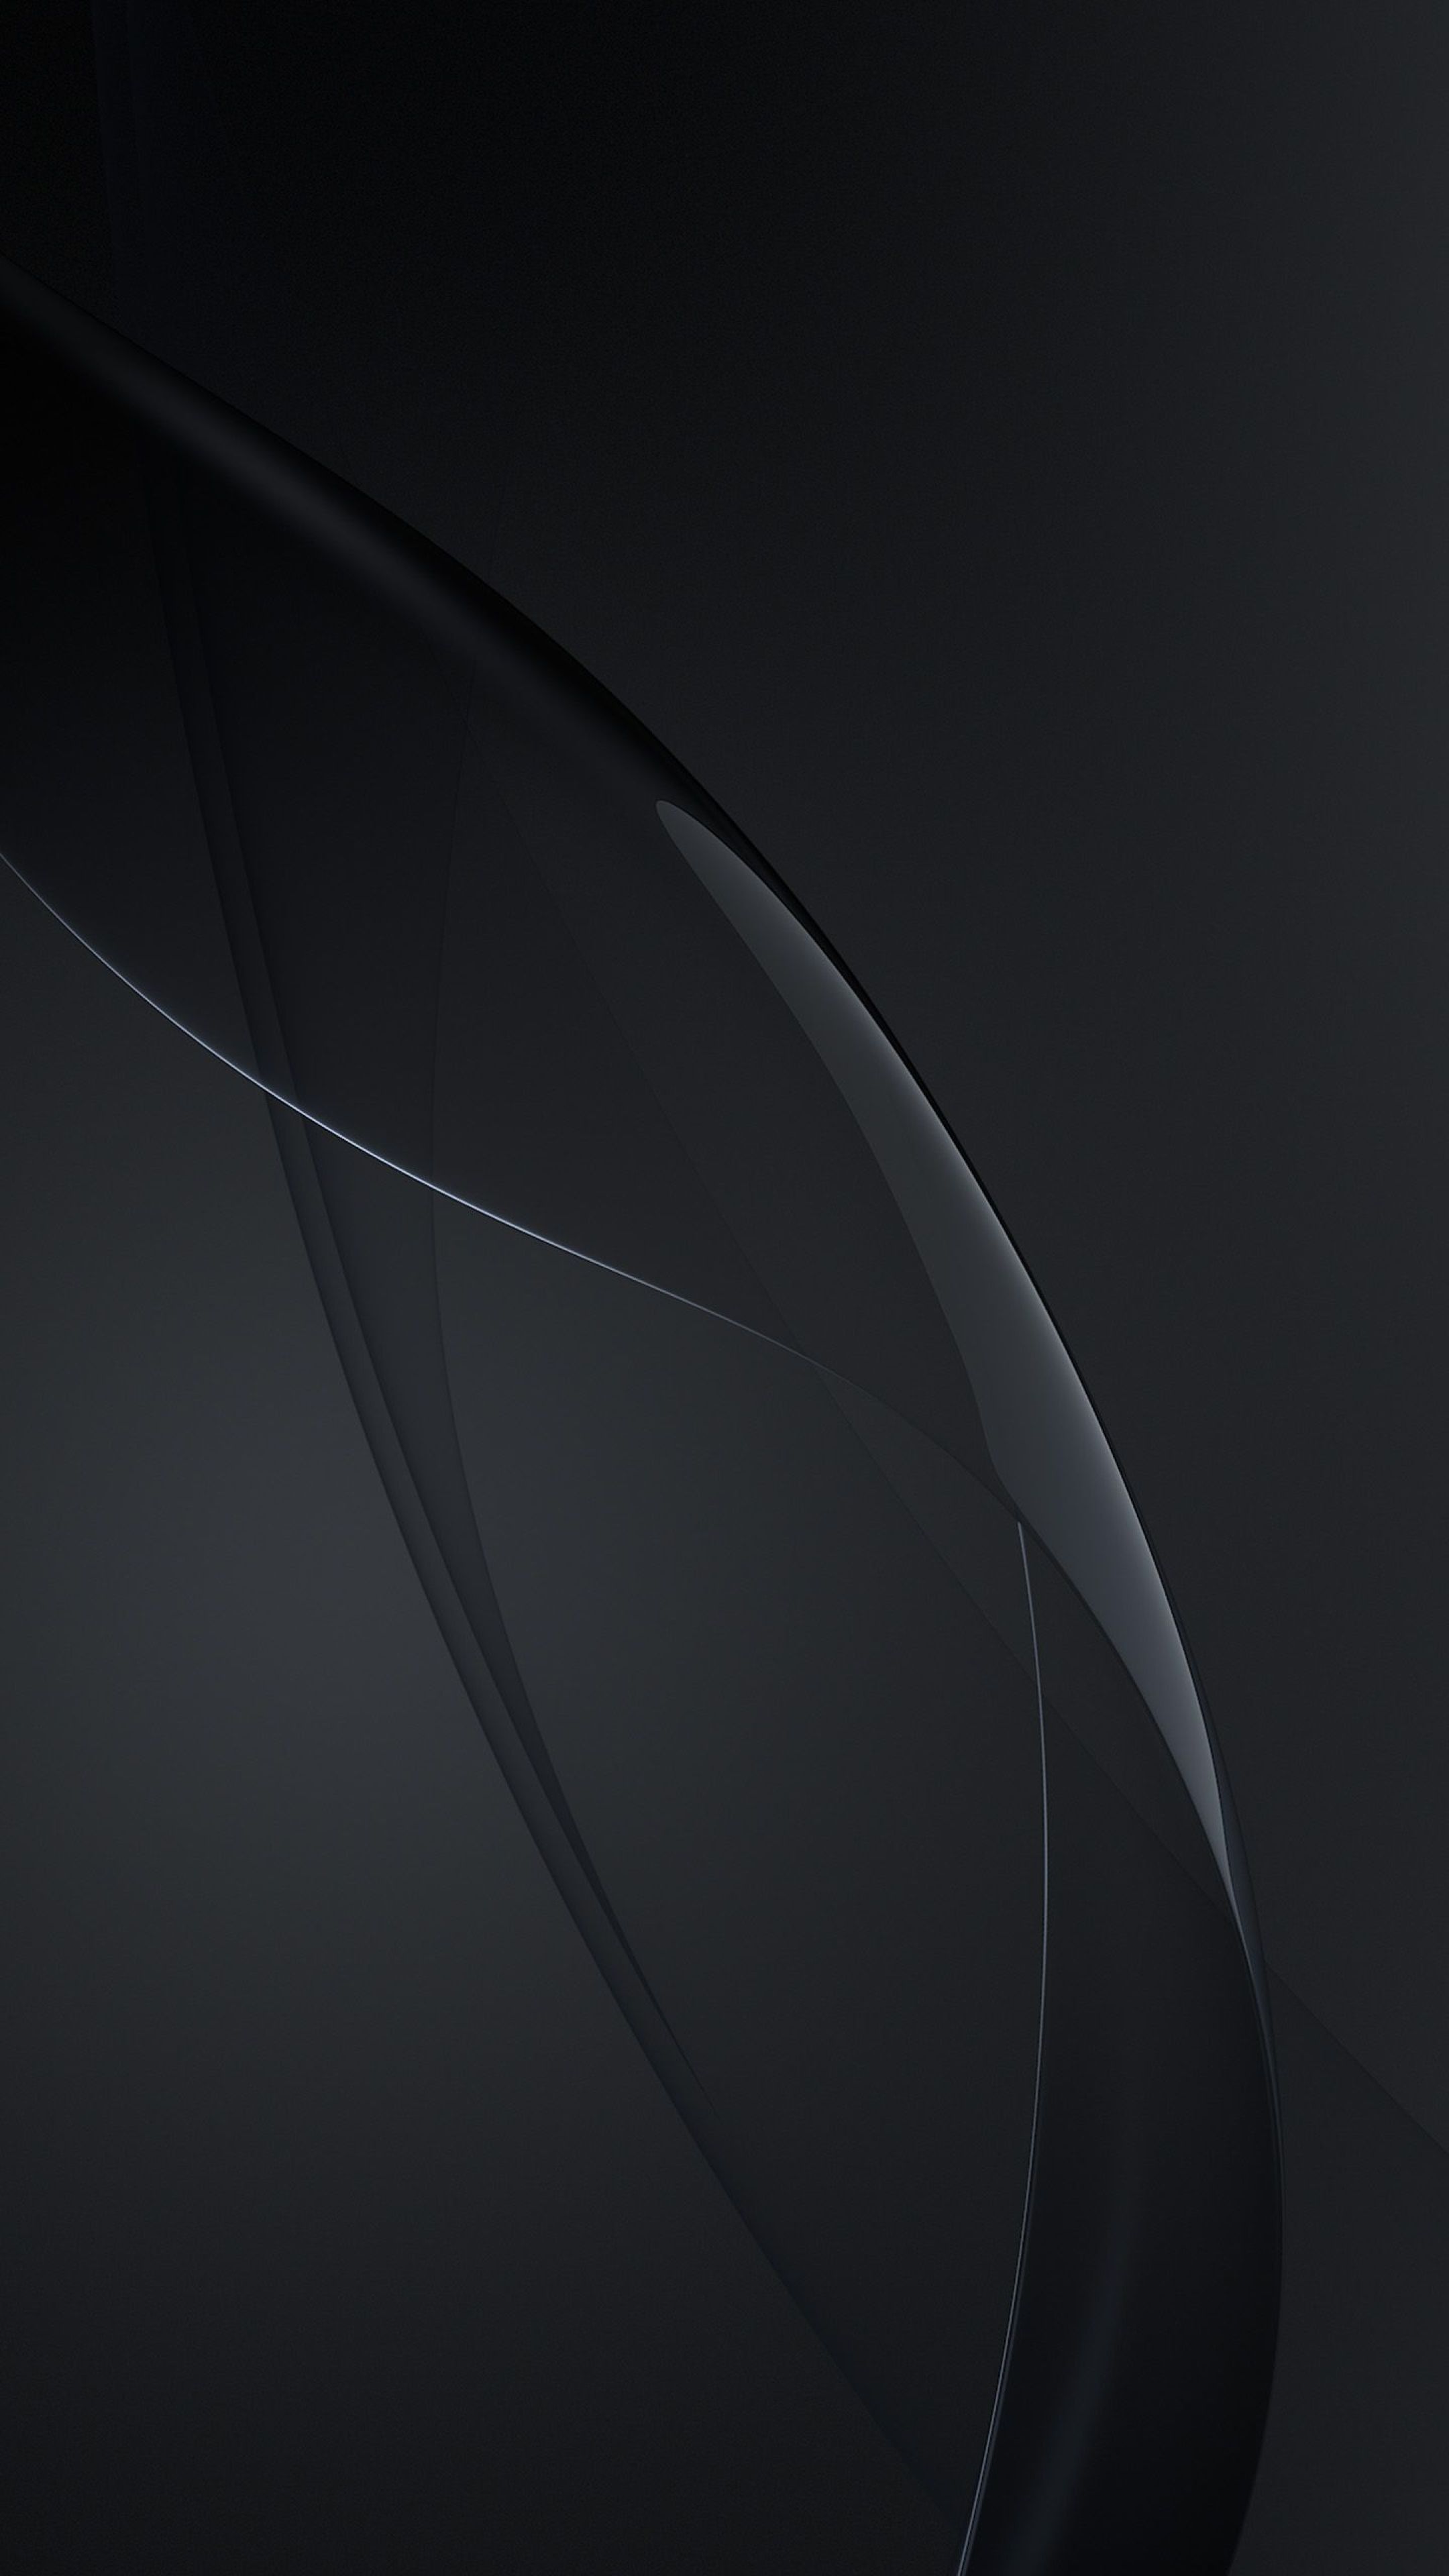 Samsung Black Wallpapers: Tự suy nghĩ và thư giãn mỗi khi nhìn vào màn hình voi Samsung Black Wallpapers. Với những tông màu đen tuyền và hiệu ứng bắt mắt, bộ sưu tập này thật sự rất độc đáo và đáng để sở hữu trên chiếc điện thoại của bạn.